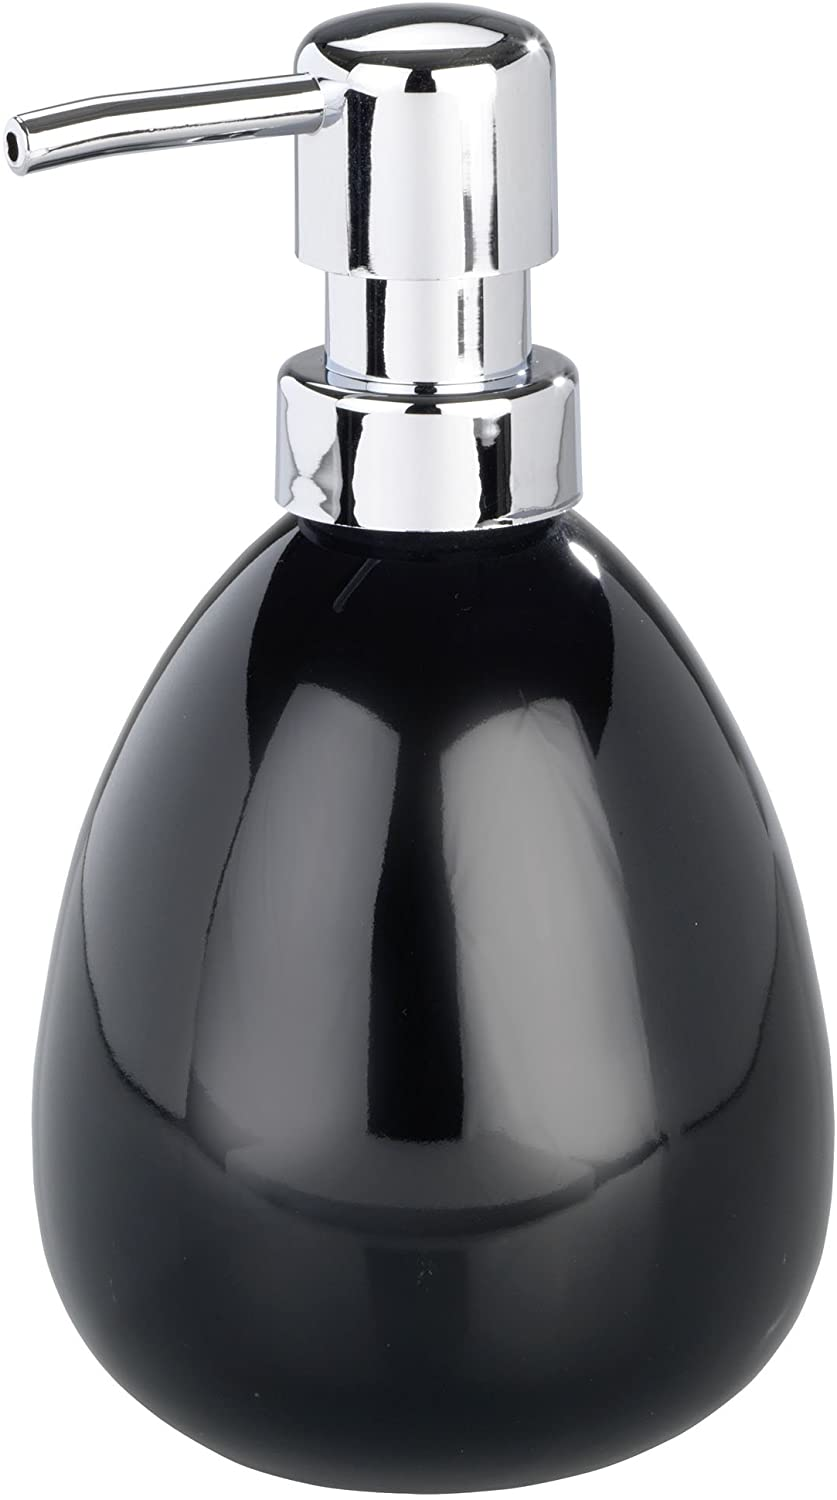 Seifenspender Polaris Black Keramik - Flüssigseifen-Spender, Spülmittel-Spender Fassungsvermögen: 0.39 l, Keramik, 9.5 x 16 x 9 cm, Schwarz